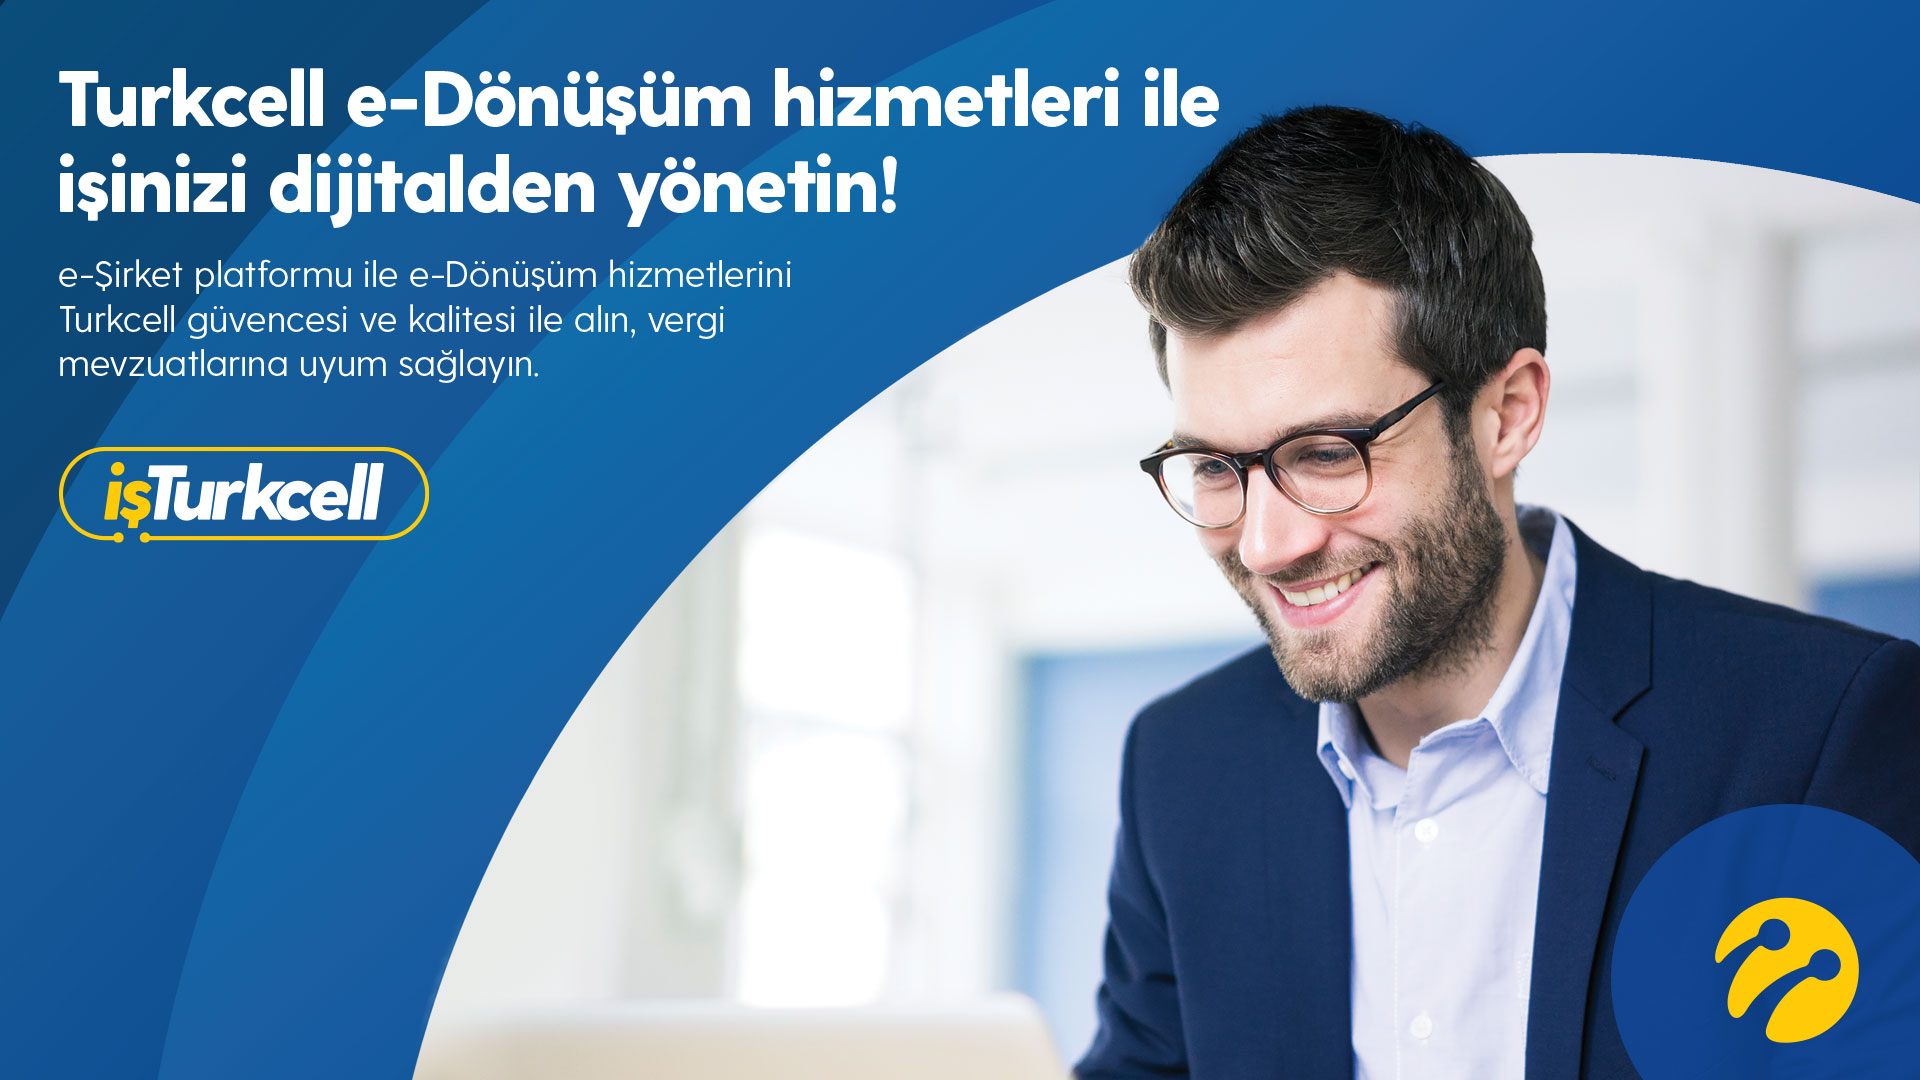 Turkcell e-Şirket (İşini Dijitalde Büyüt)